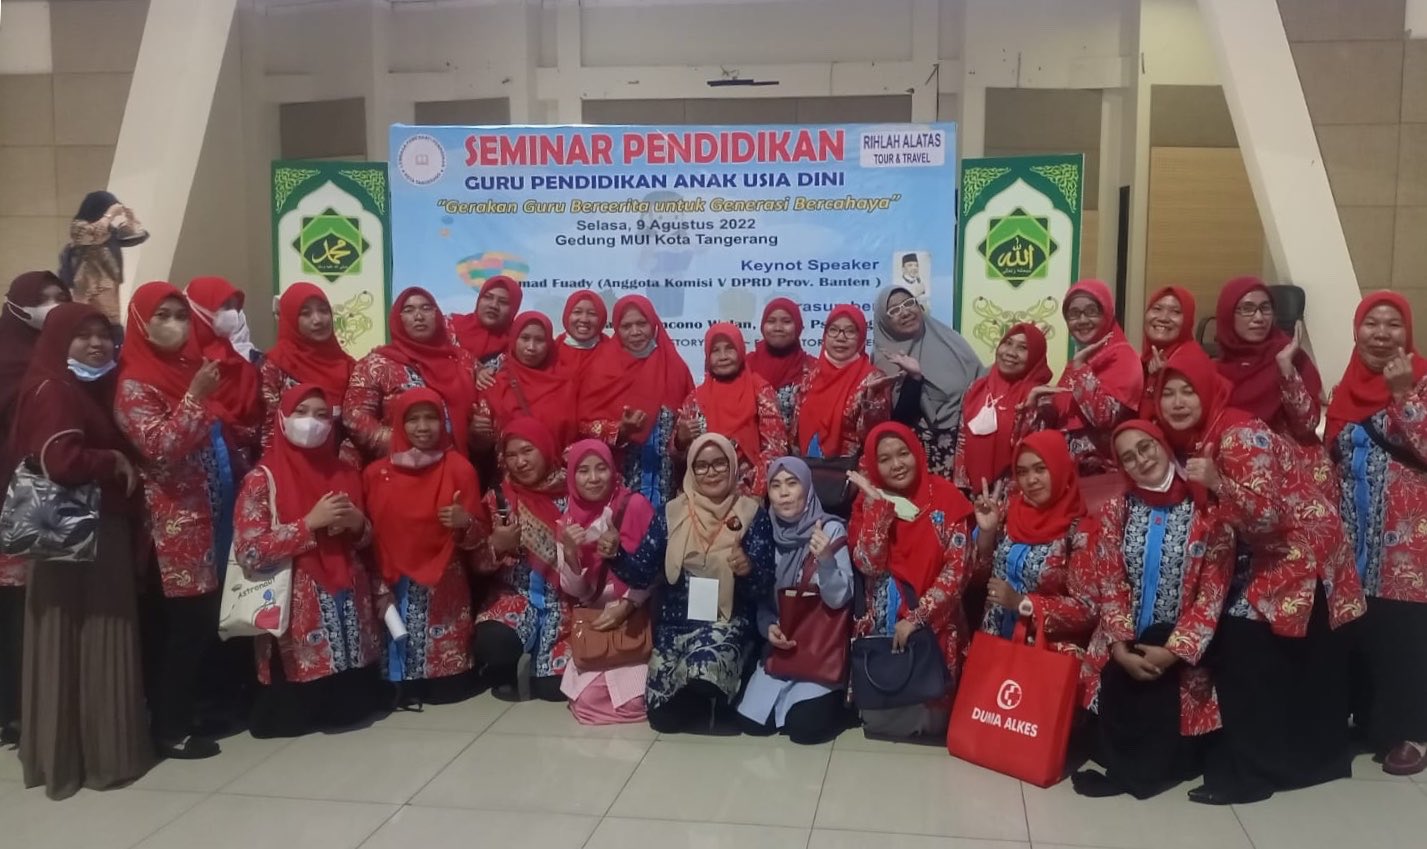 Guru-Guru PAUD Minta LPP Adakan Roadshow Seminar Pendidikan Gratis Lintas Kecamatan